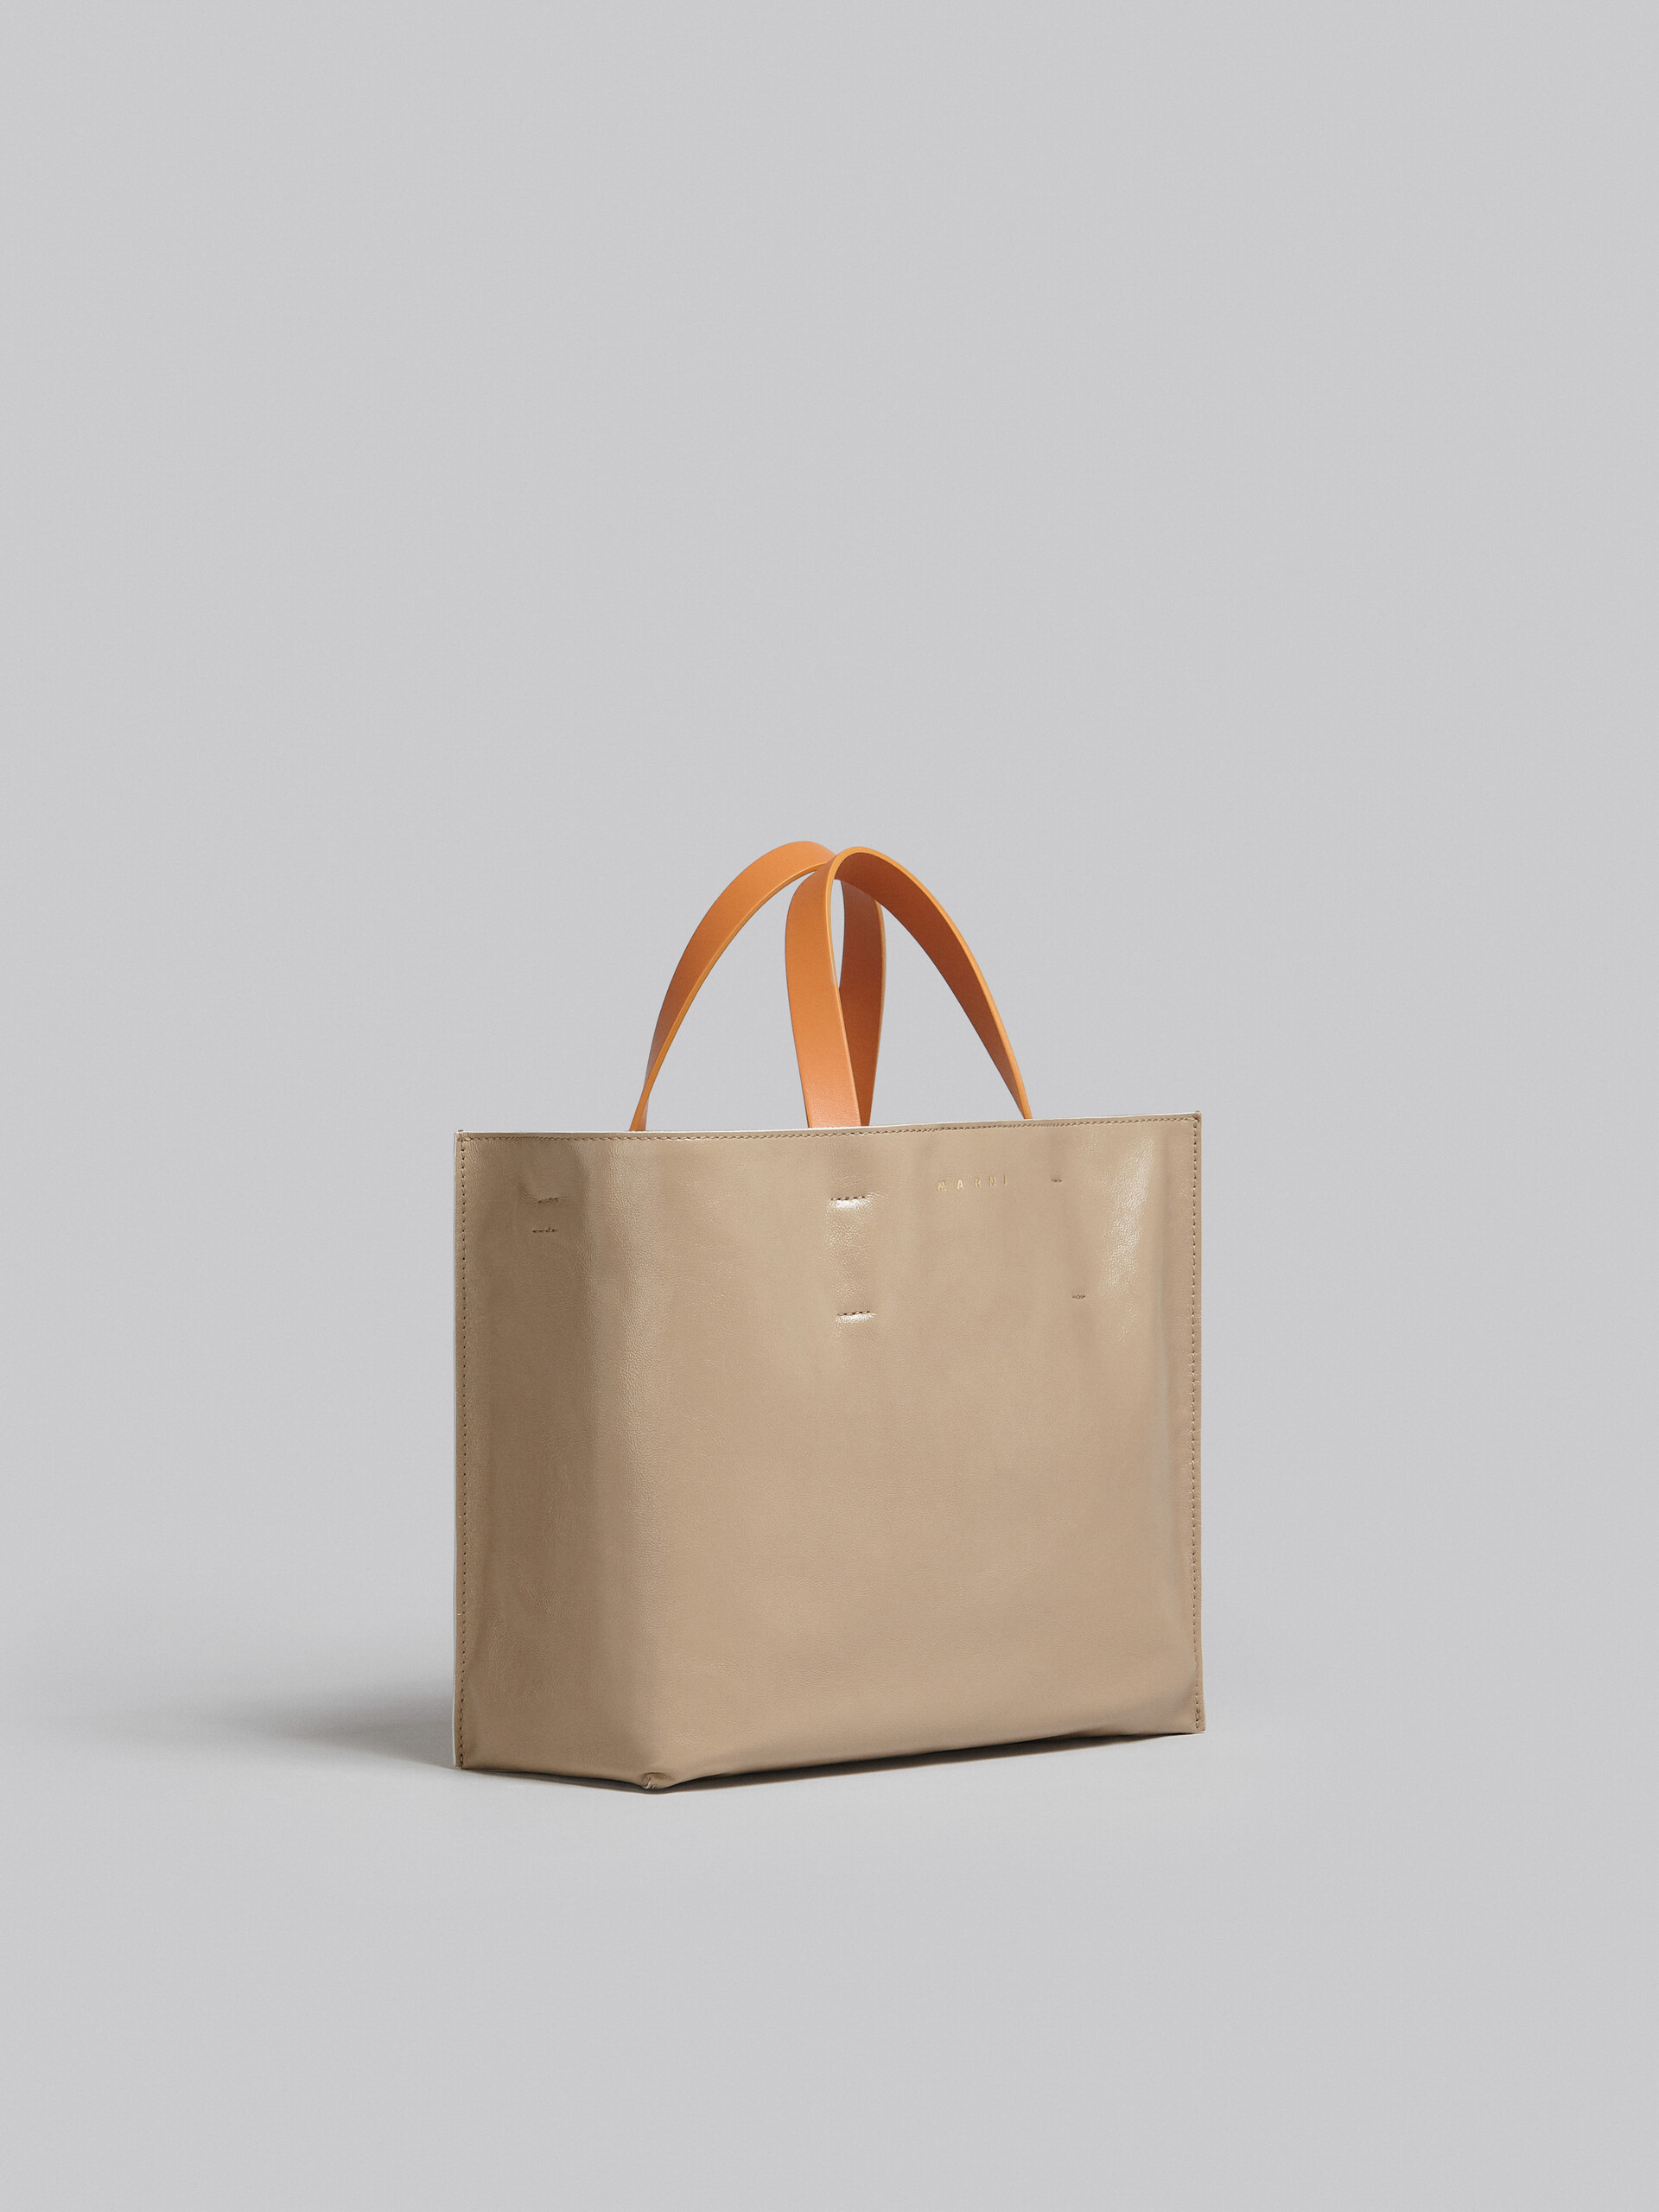 Museo Soft Bag E/W in pelle grigio-verde e beige - Borse shopping - Image 6